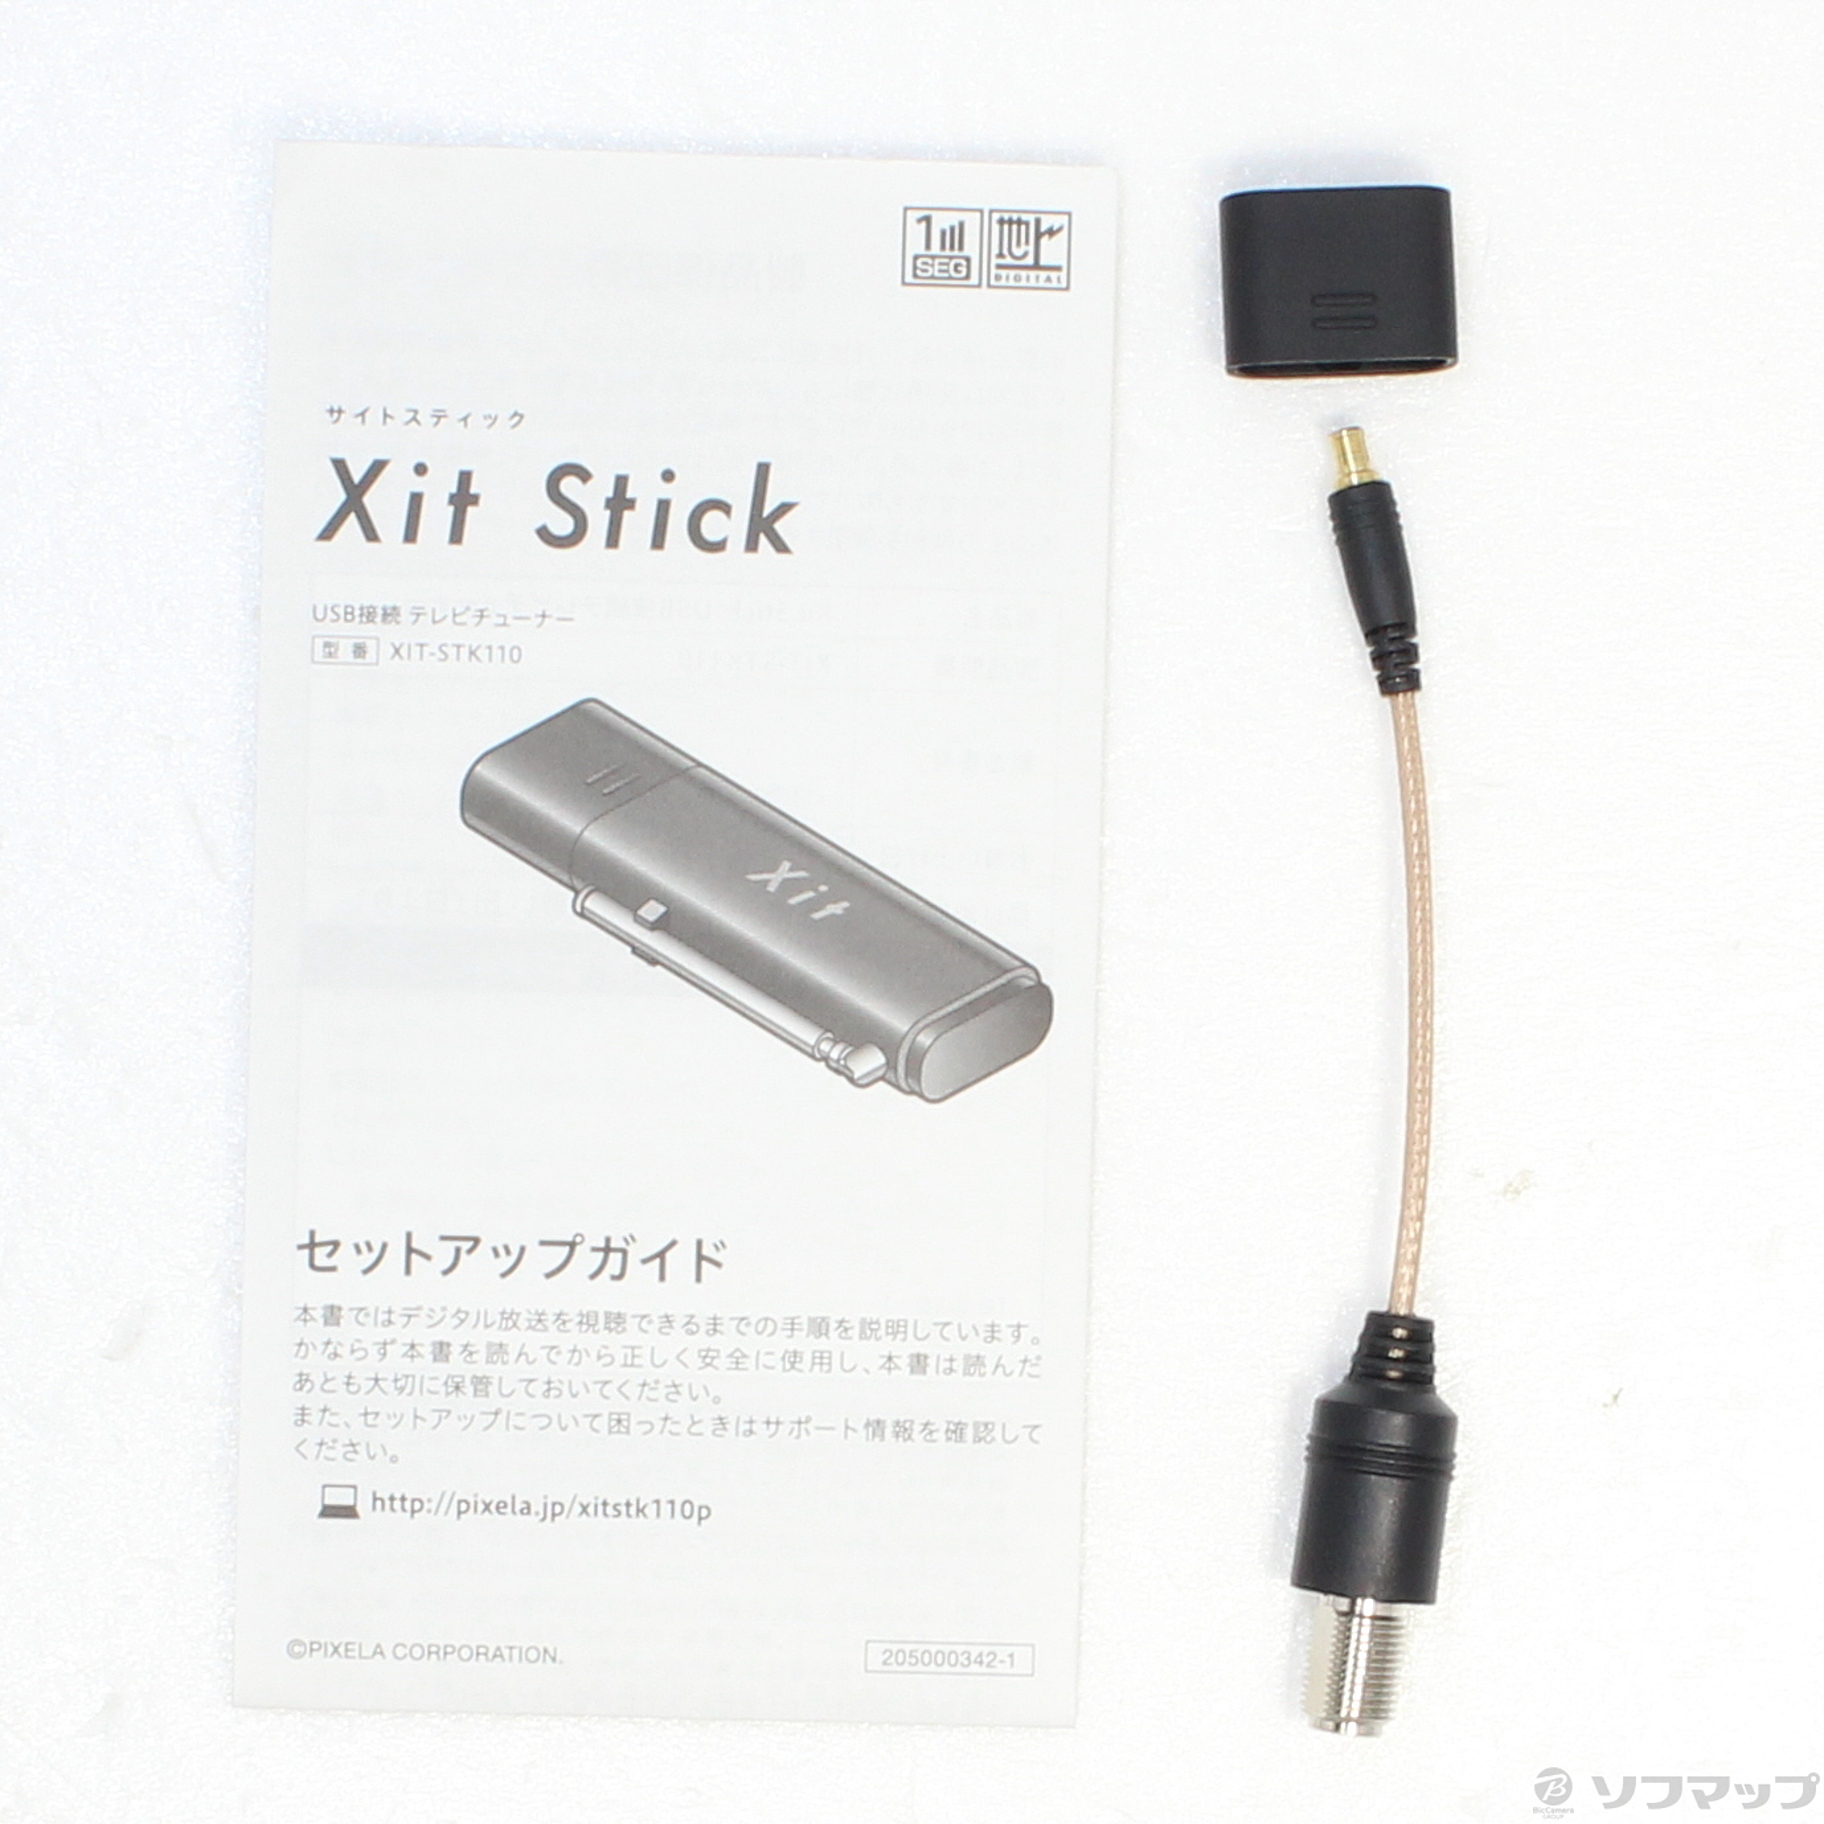 超爆安 【BEE】ピクセラ Xit Stick XIT-STK210 スマホアクセサリー 